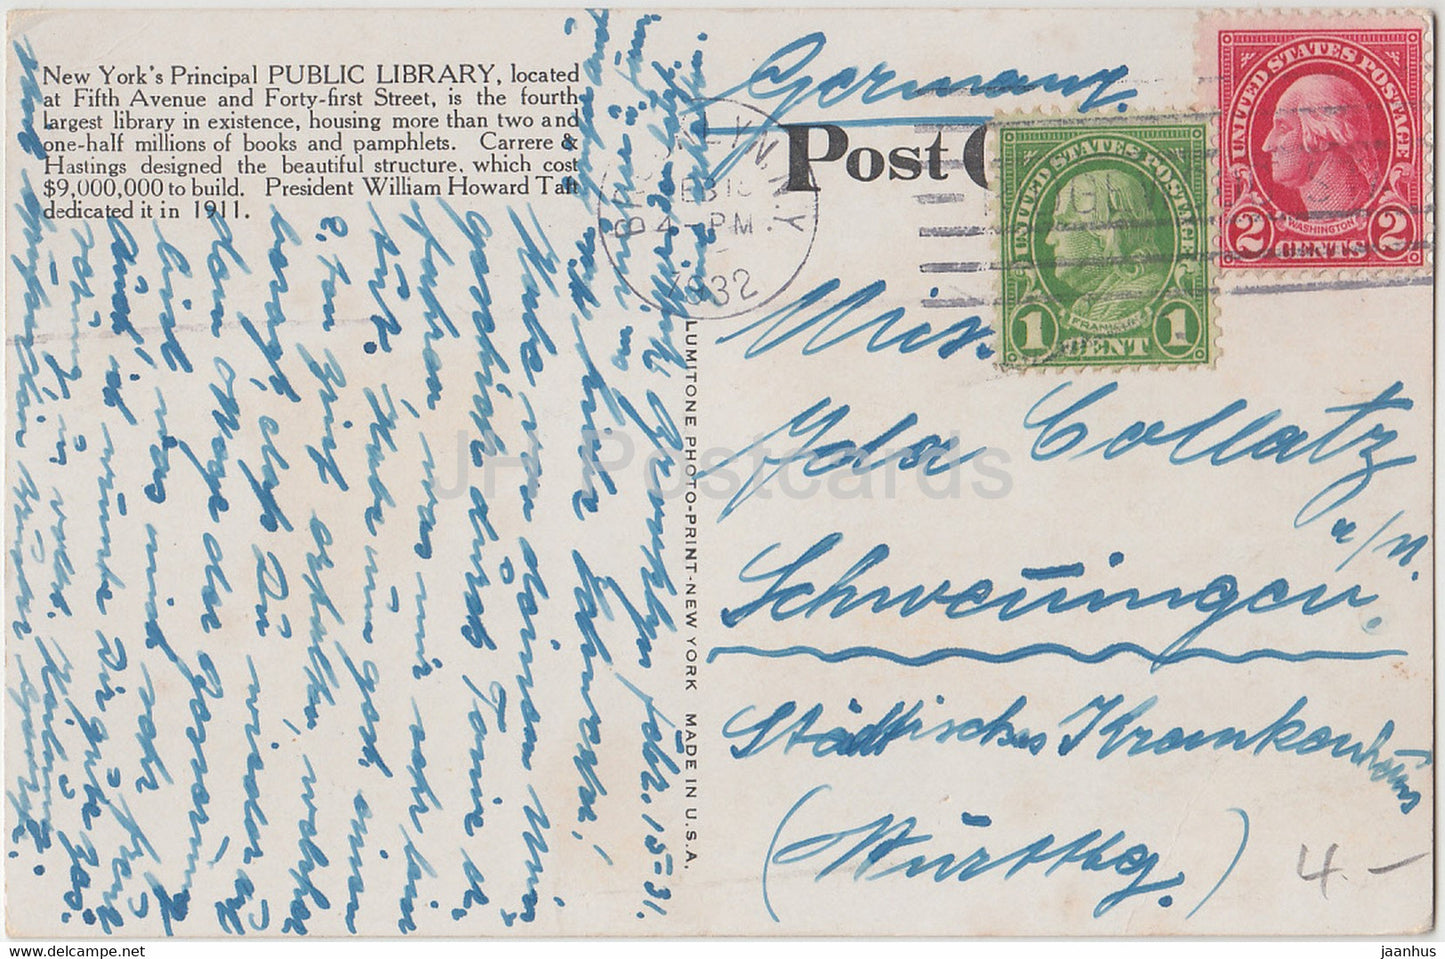 New York – Öffentliche Bibliothek – Auto – alte Postkarte – 1932 – Vereinigte Staaten – USA – gebraucht